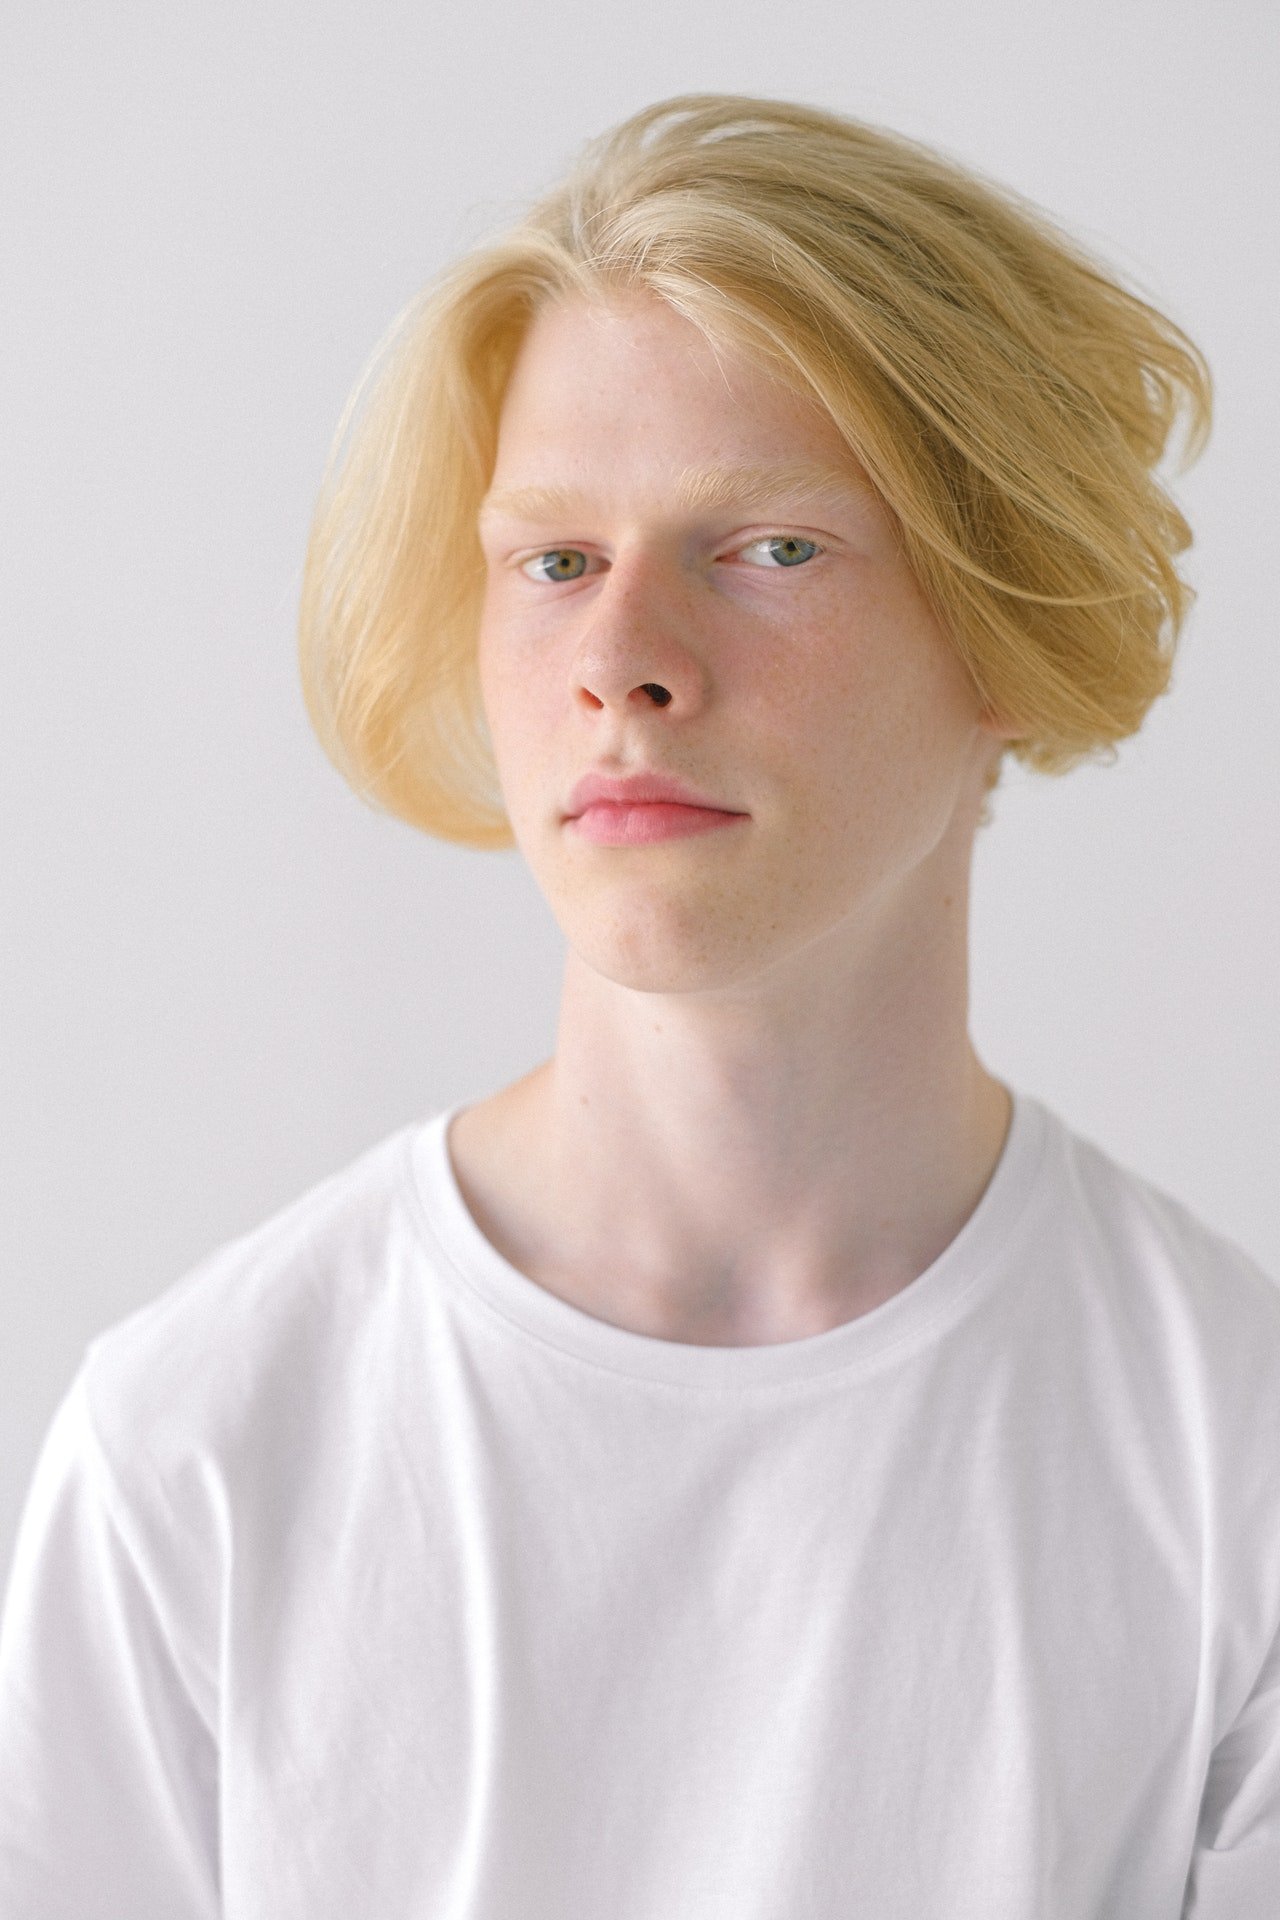 Blonde boy | Source: Pexels